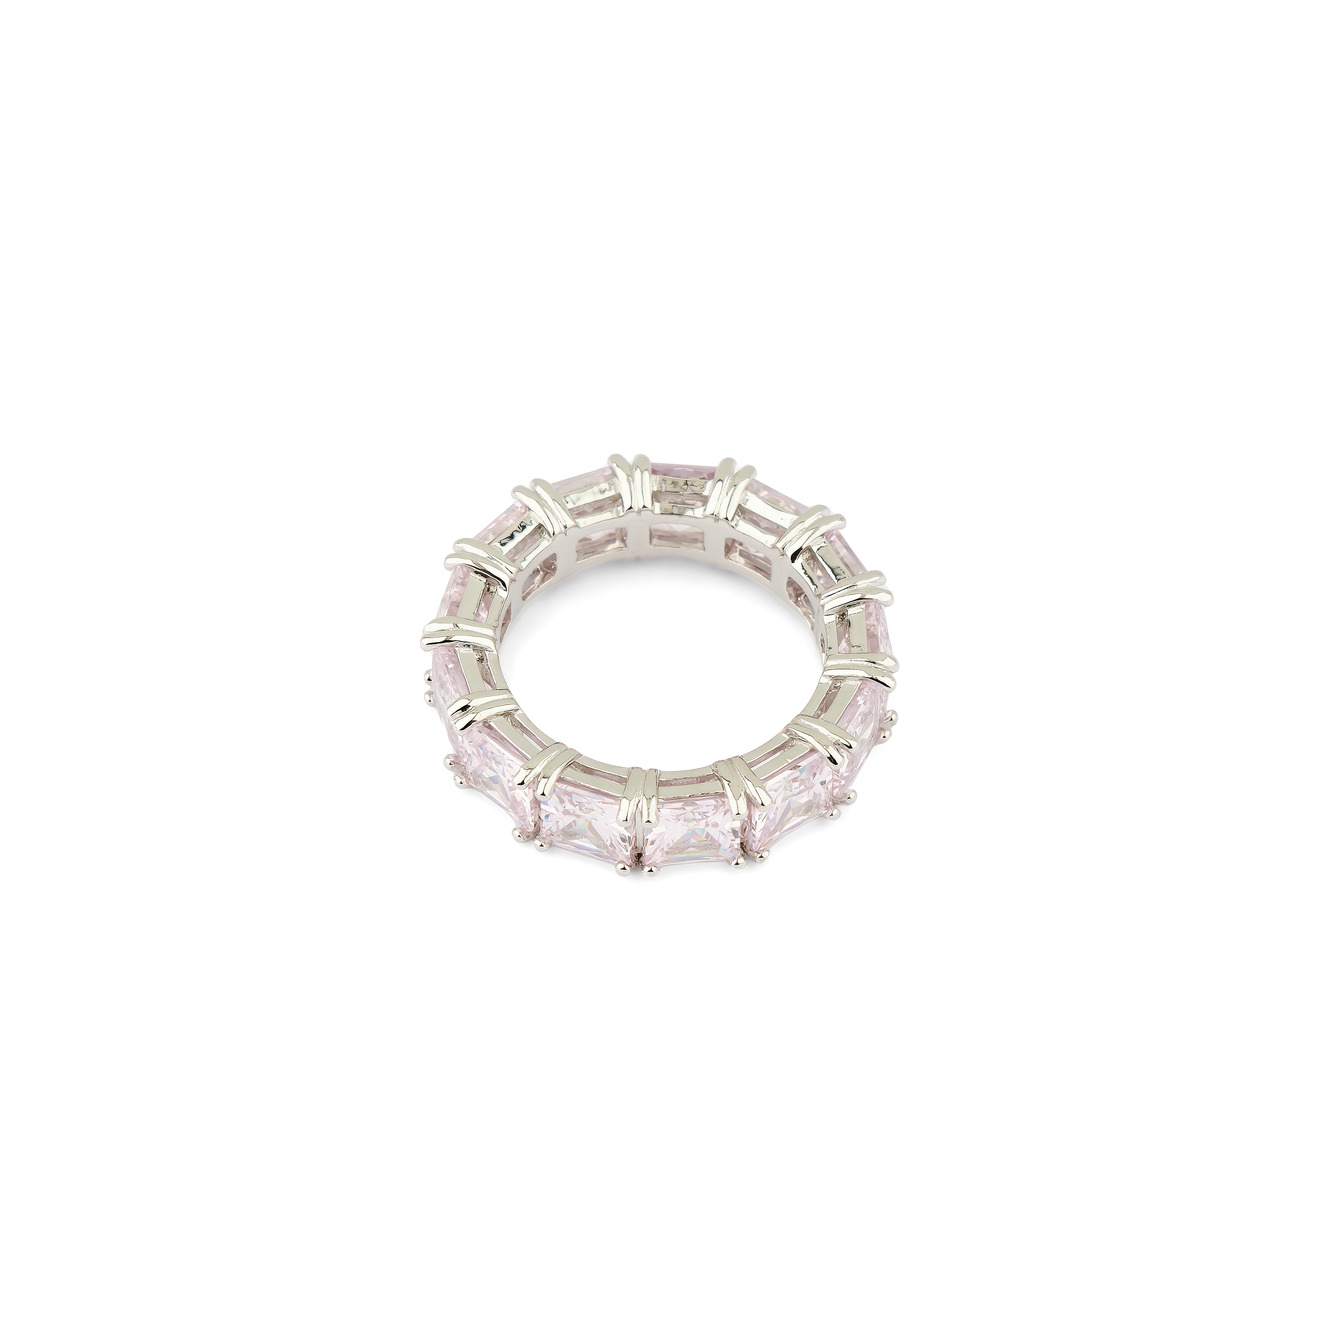 Holy Silver Кольцо из серебра с дорожкой из розовых кристаллов holy silver кольцо дорожка из розовых и белых кристаллов разной формы